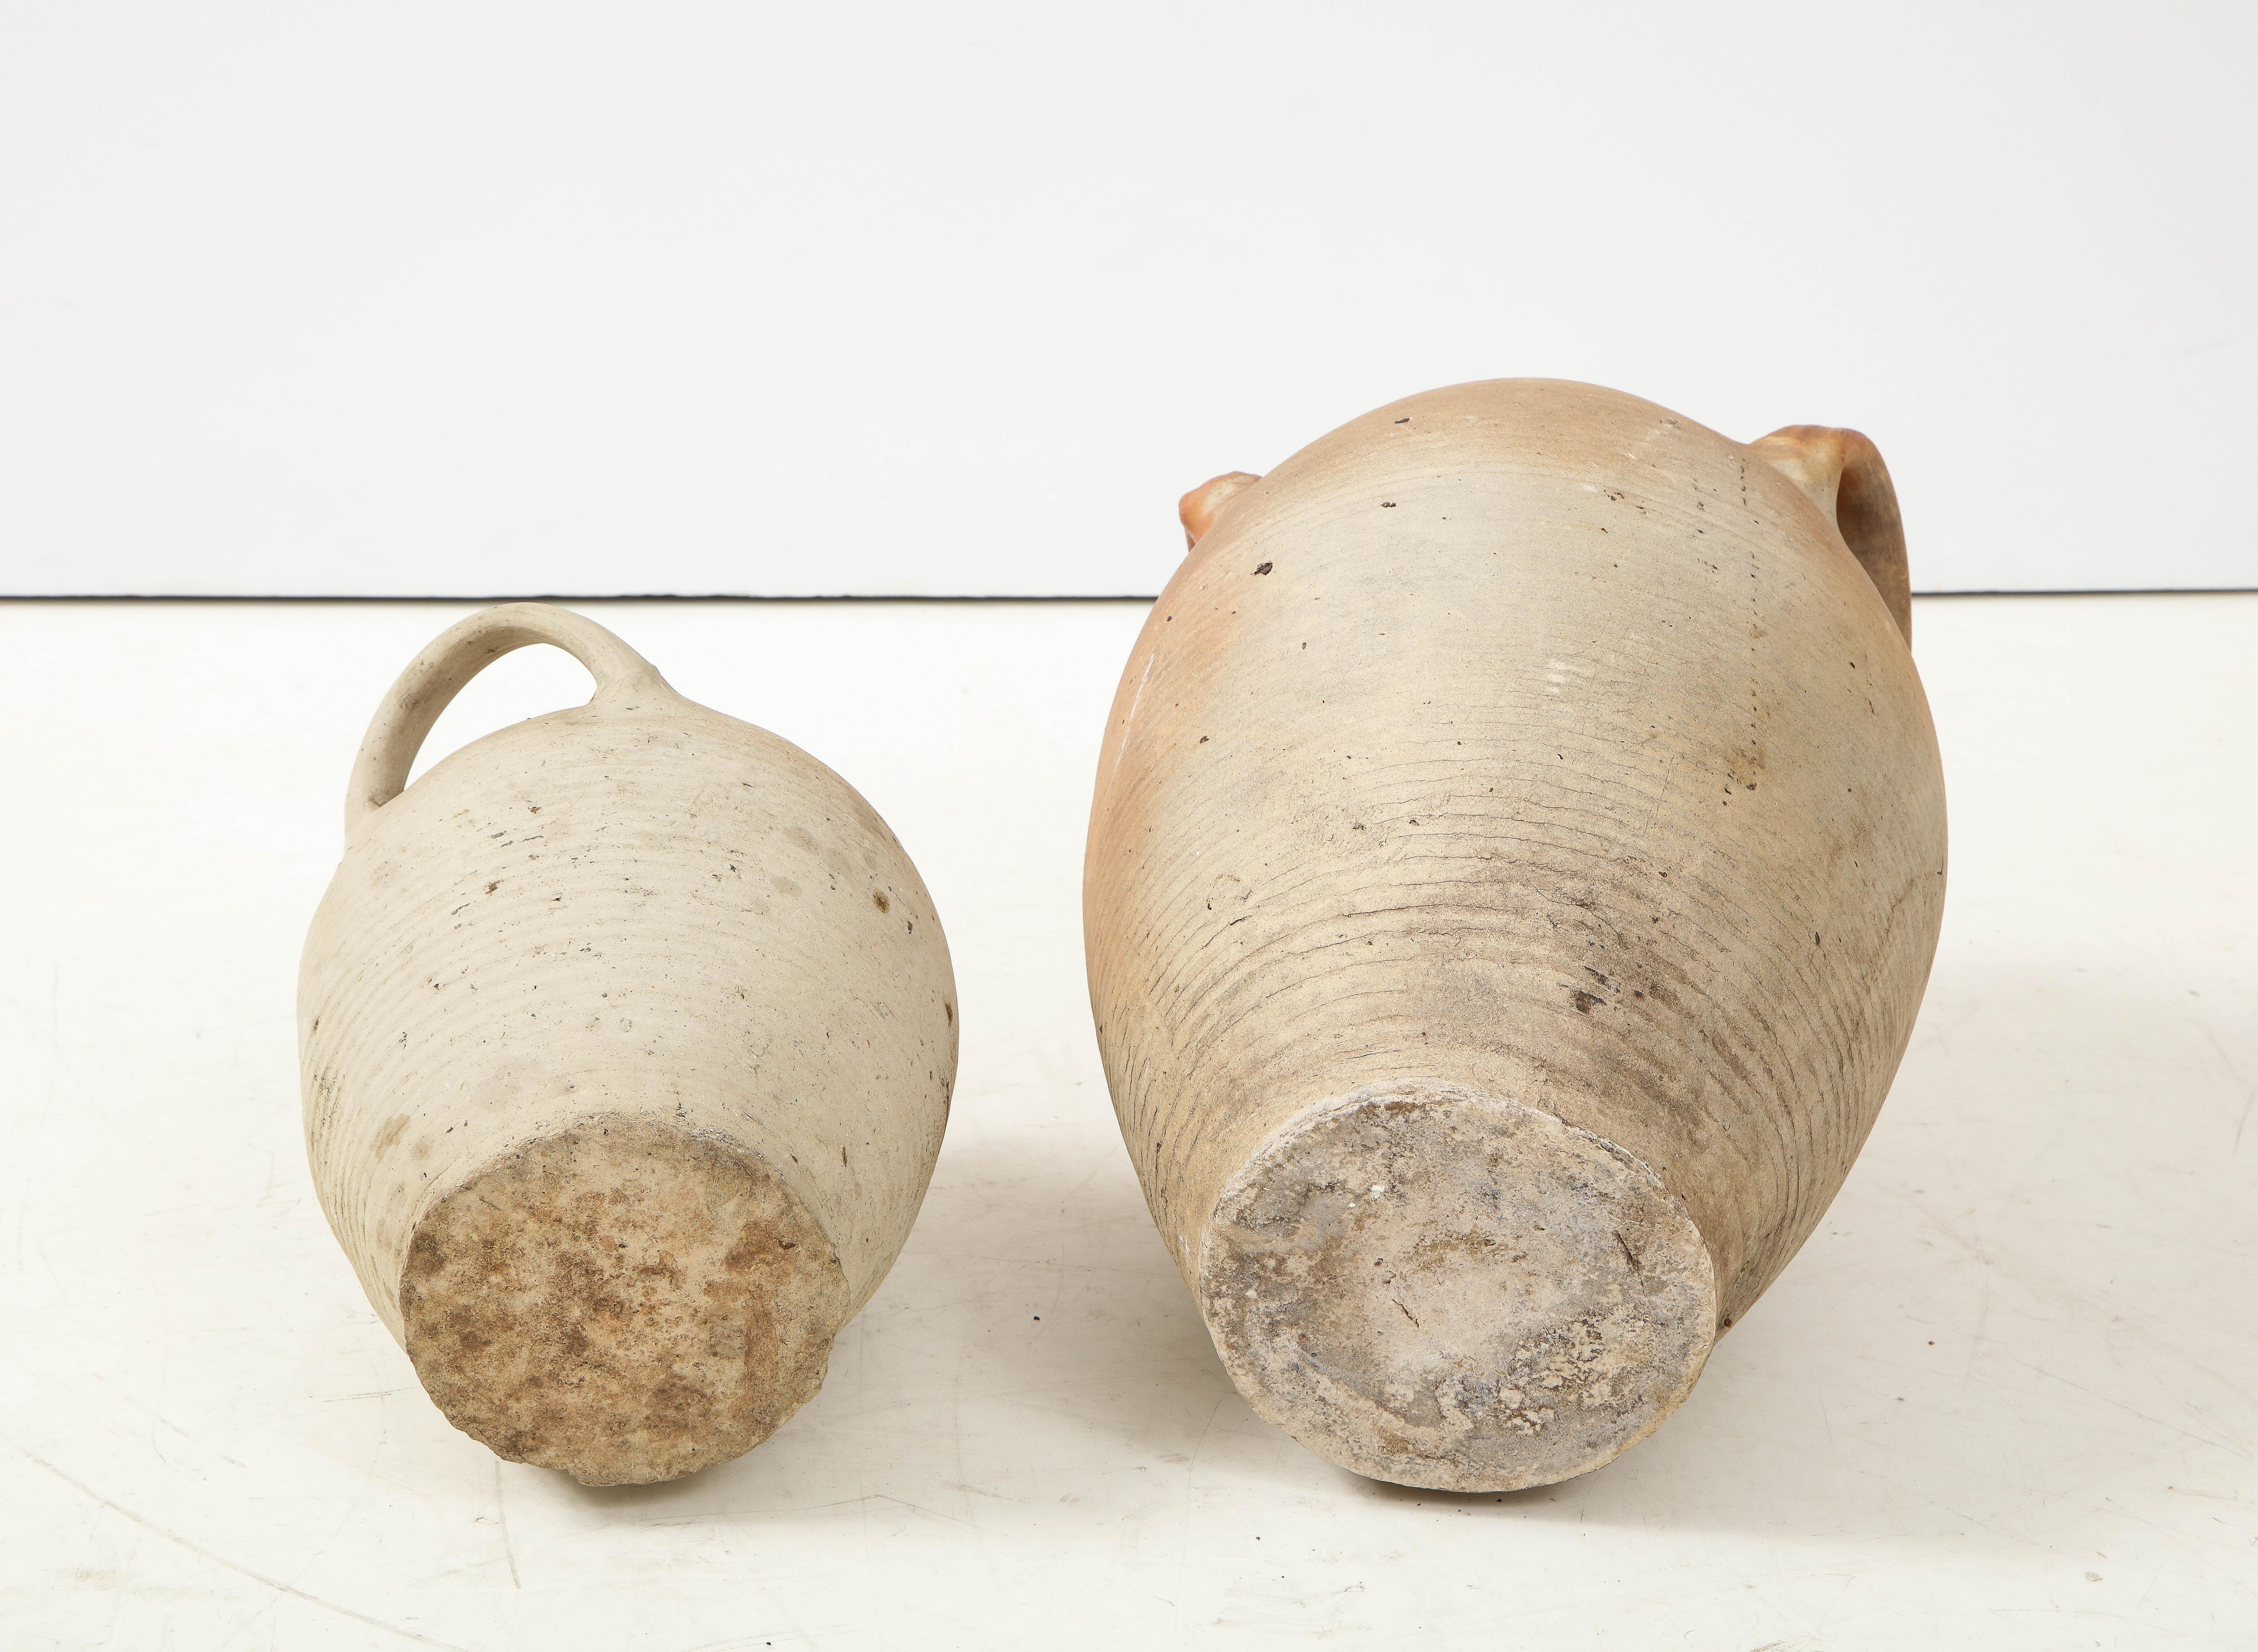 French Provincial Stoneware Vintage Pottery Oil Jar, Jug, Vase or Vessel 9